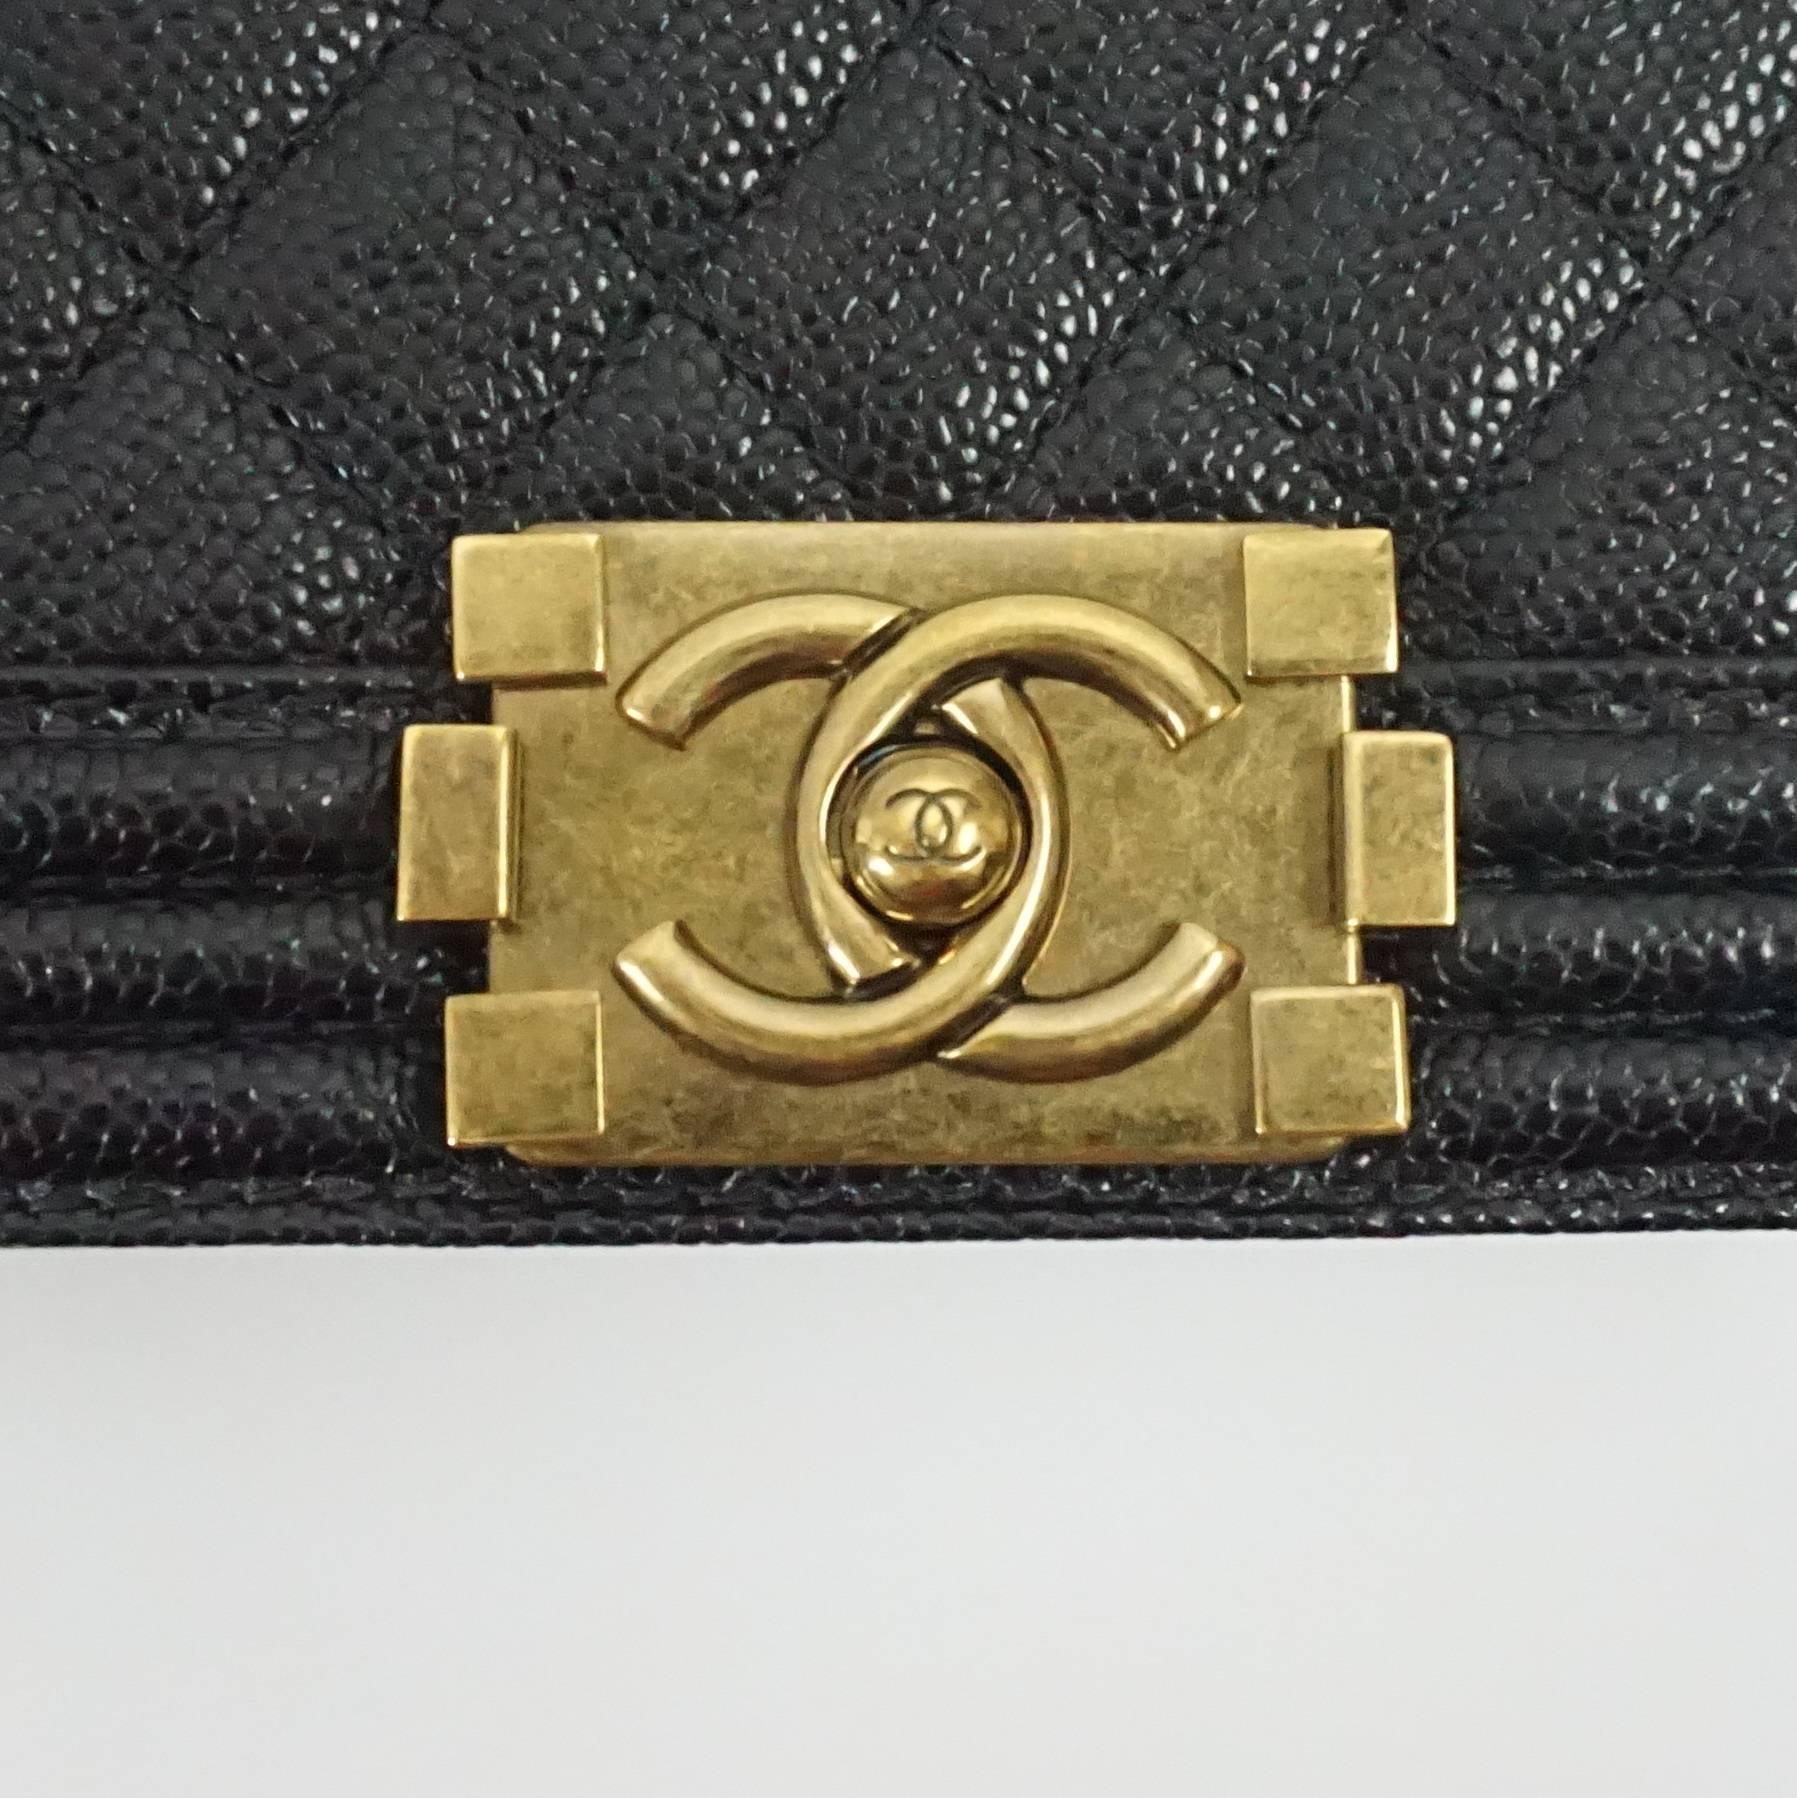 Chanel Black Caviar Small Boy Bag - GHW - 2014 2